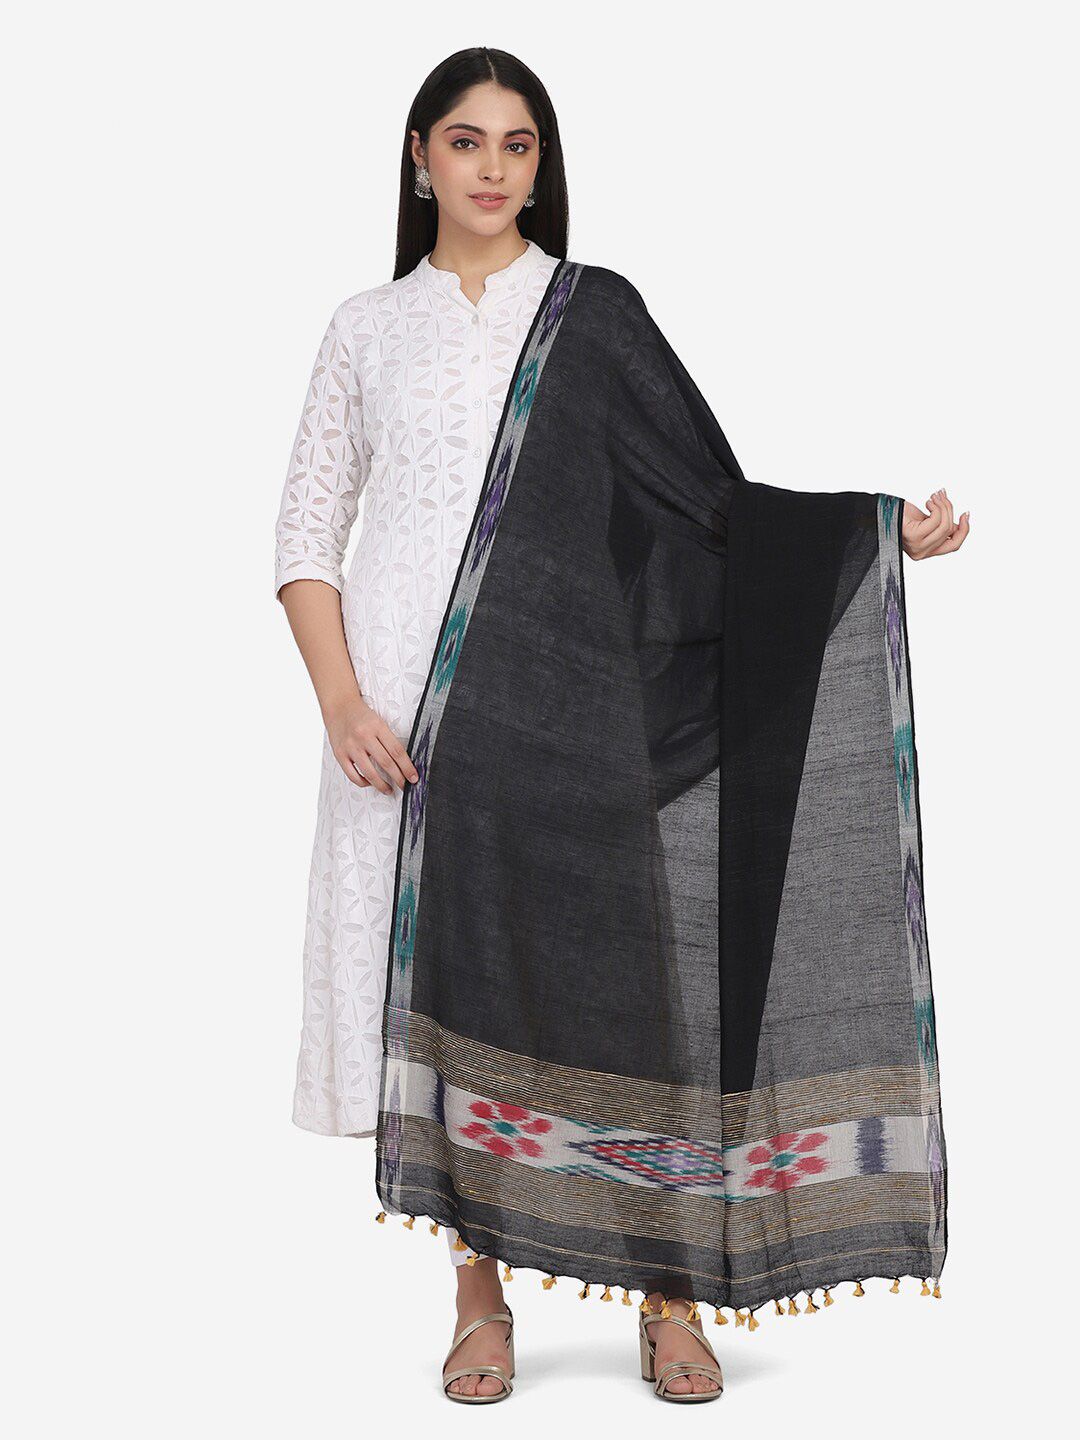 THE WEAVE TRAVELLER Black & White Woven Design Pure Cotton Dupatta Price in India